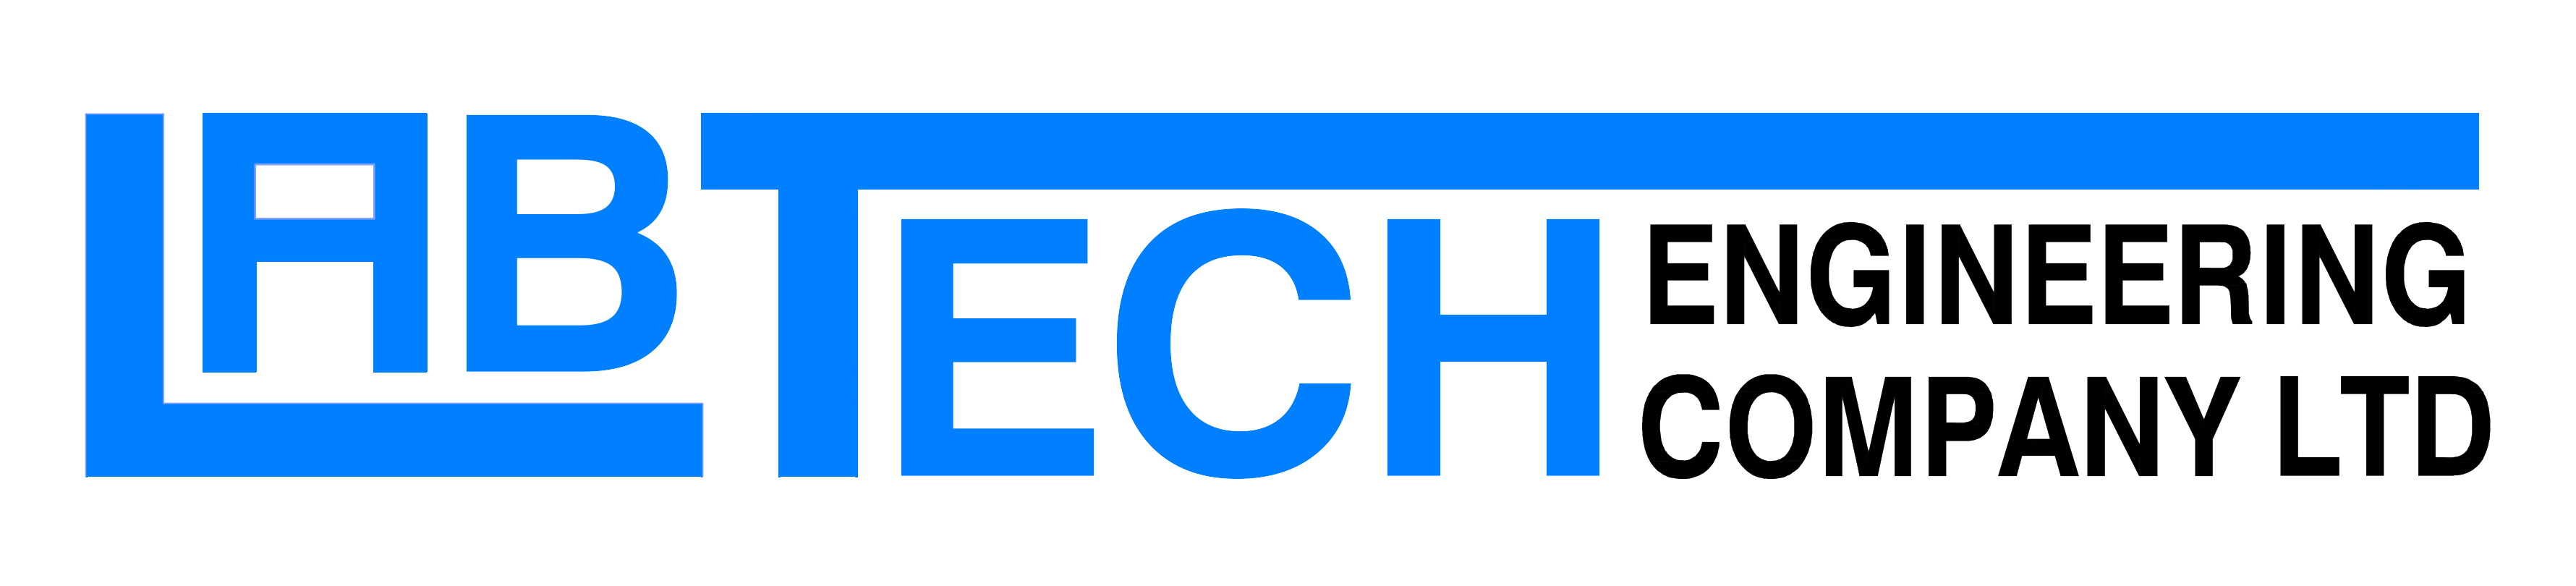 บริษัท แล็บเทค เอนจิเนียริ่ง จำกัด logo โลโก้